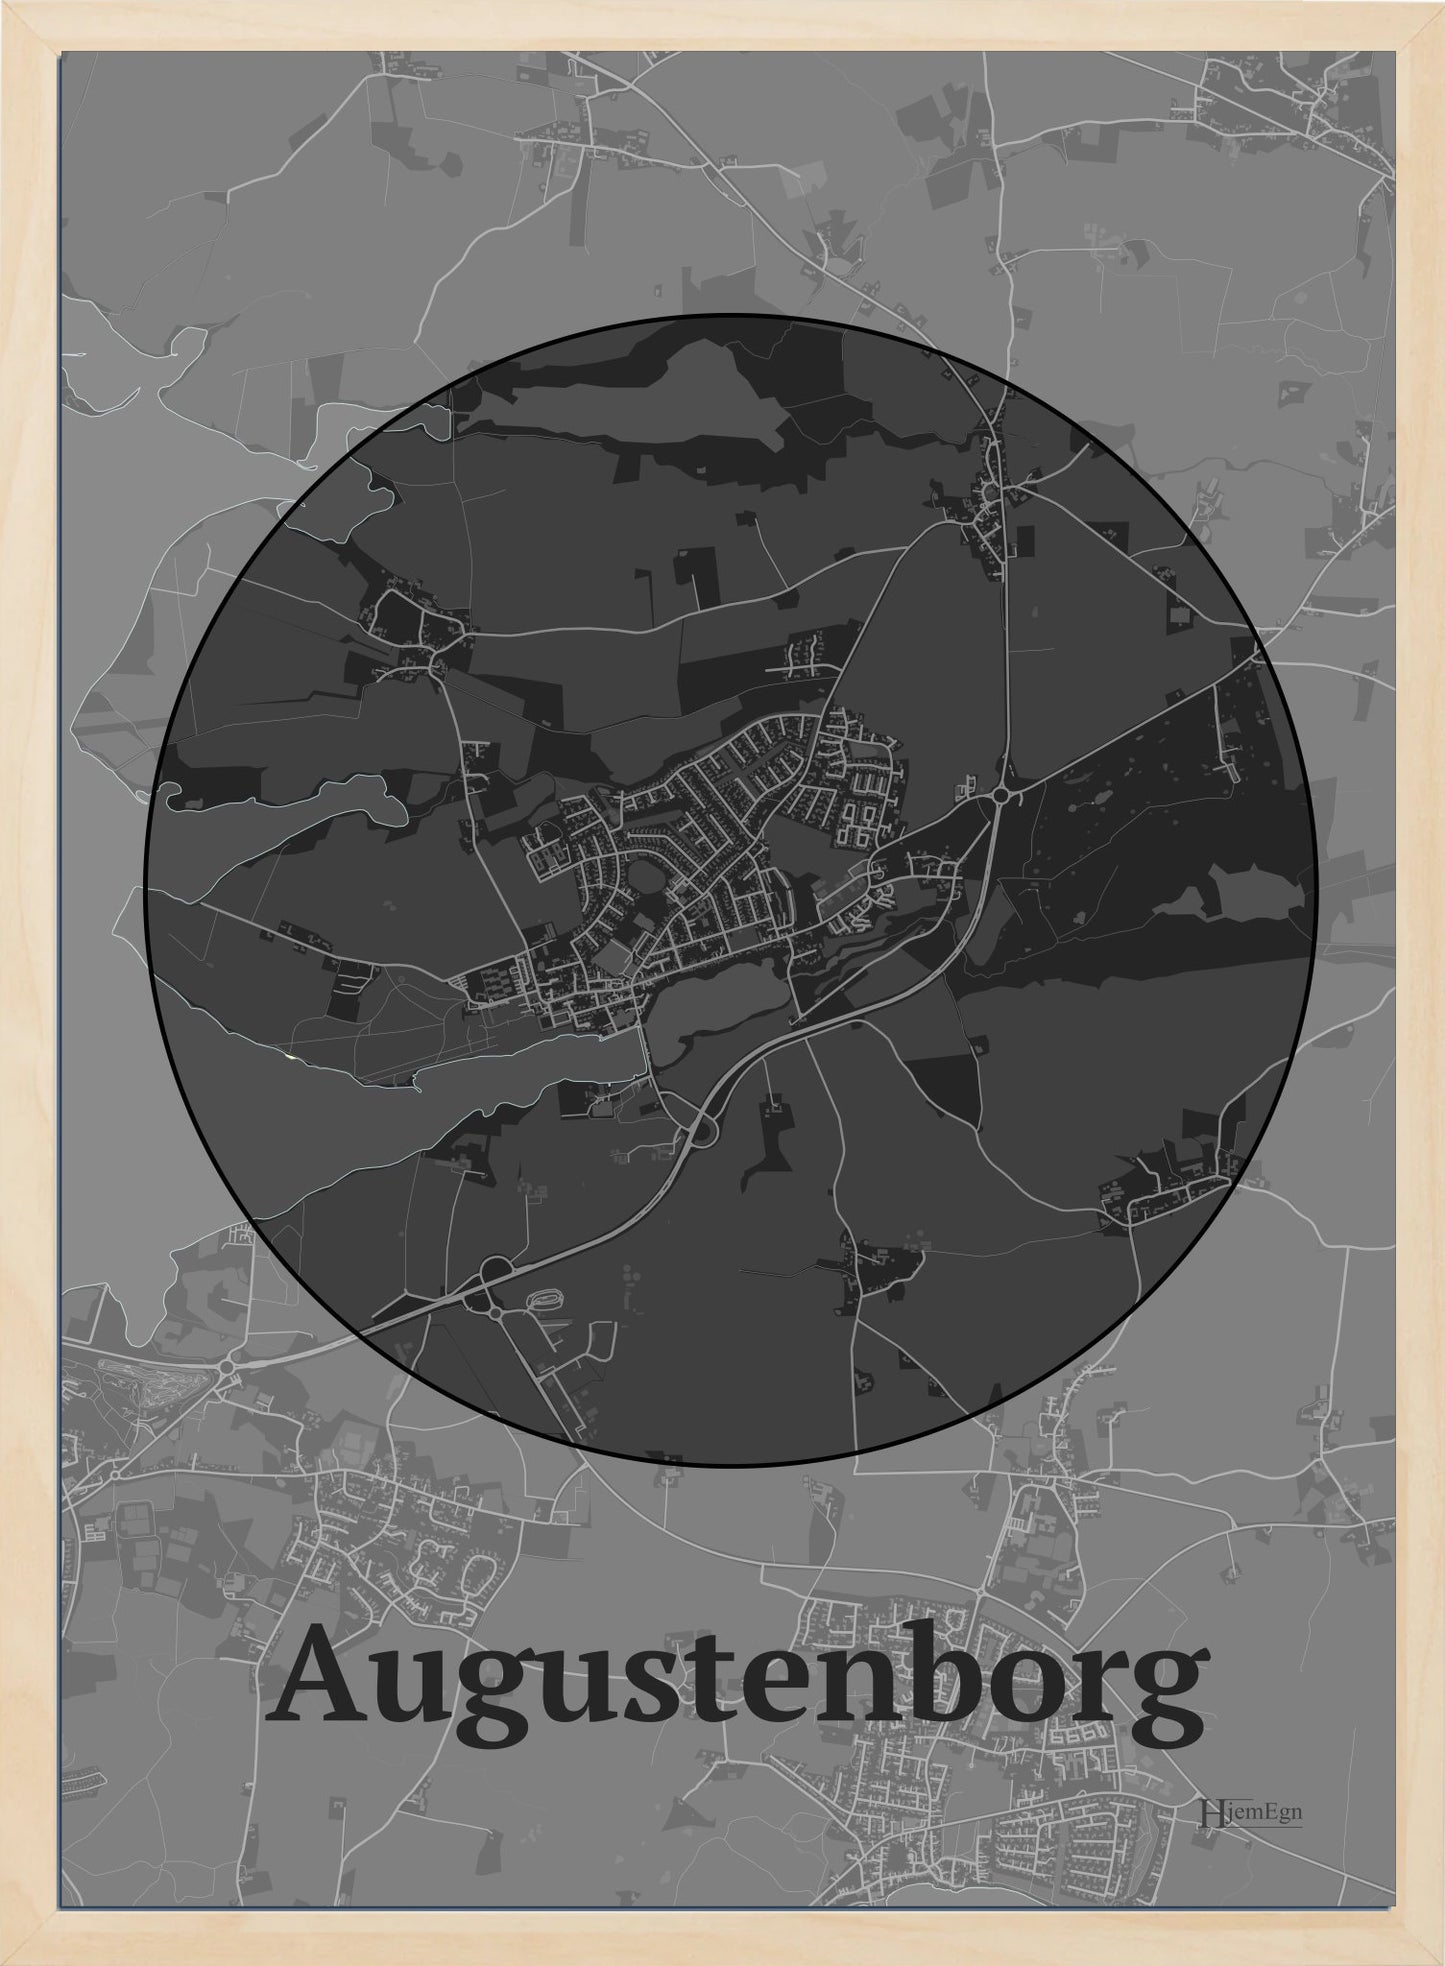 Augudenborg Poster